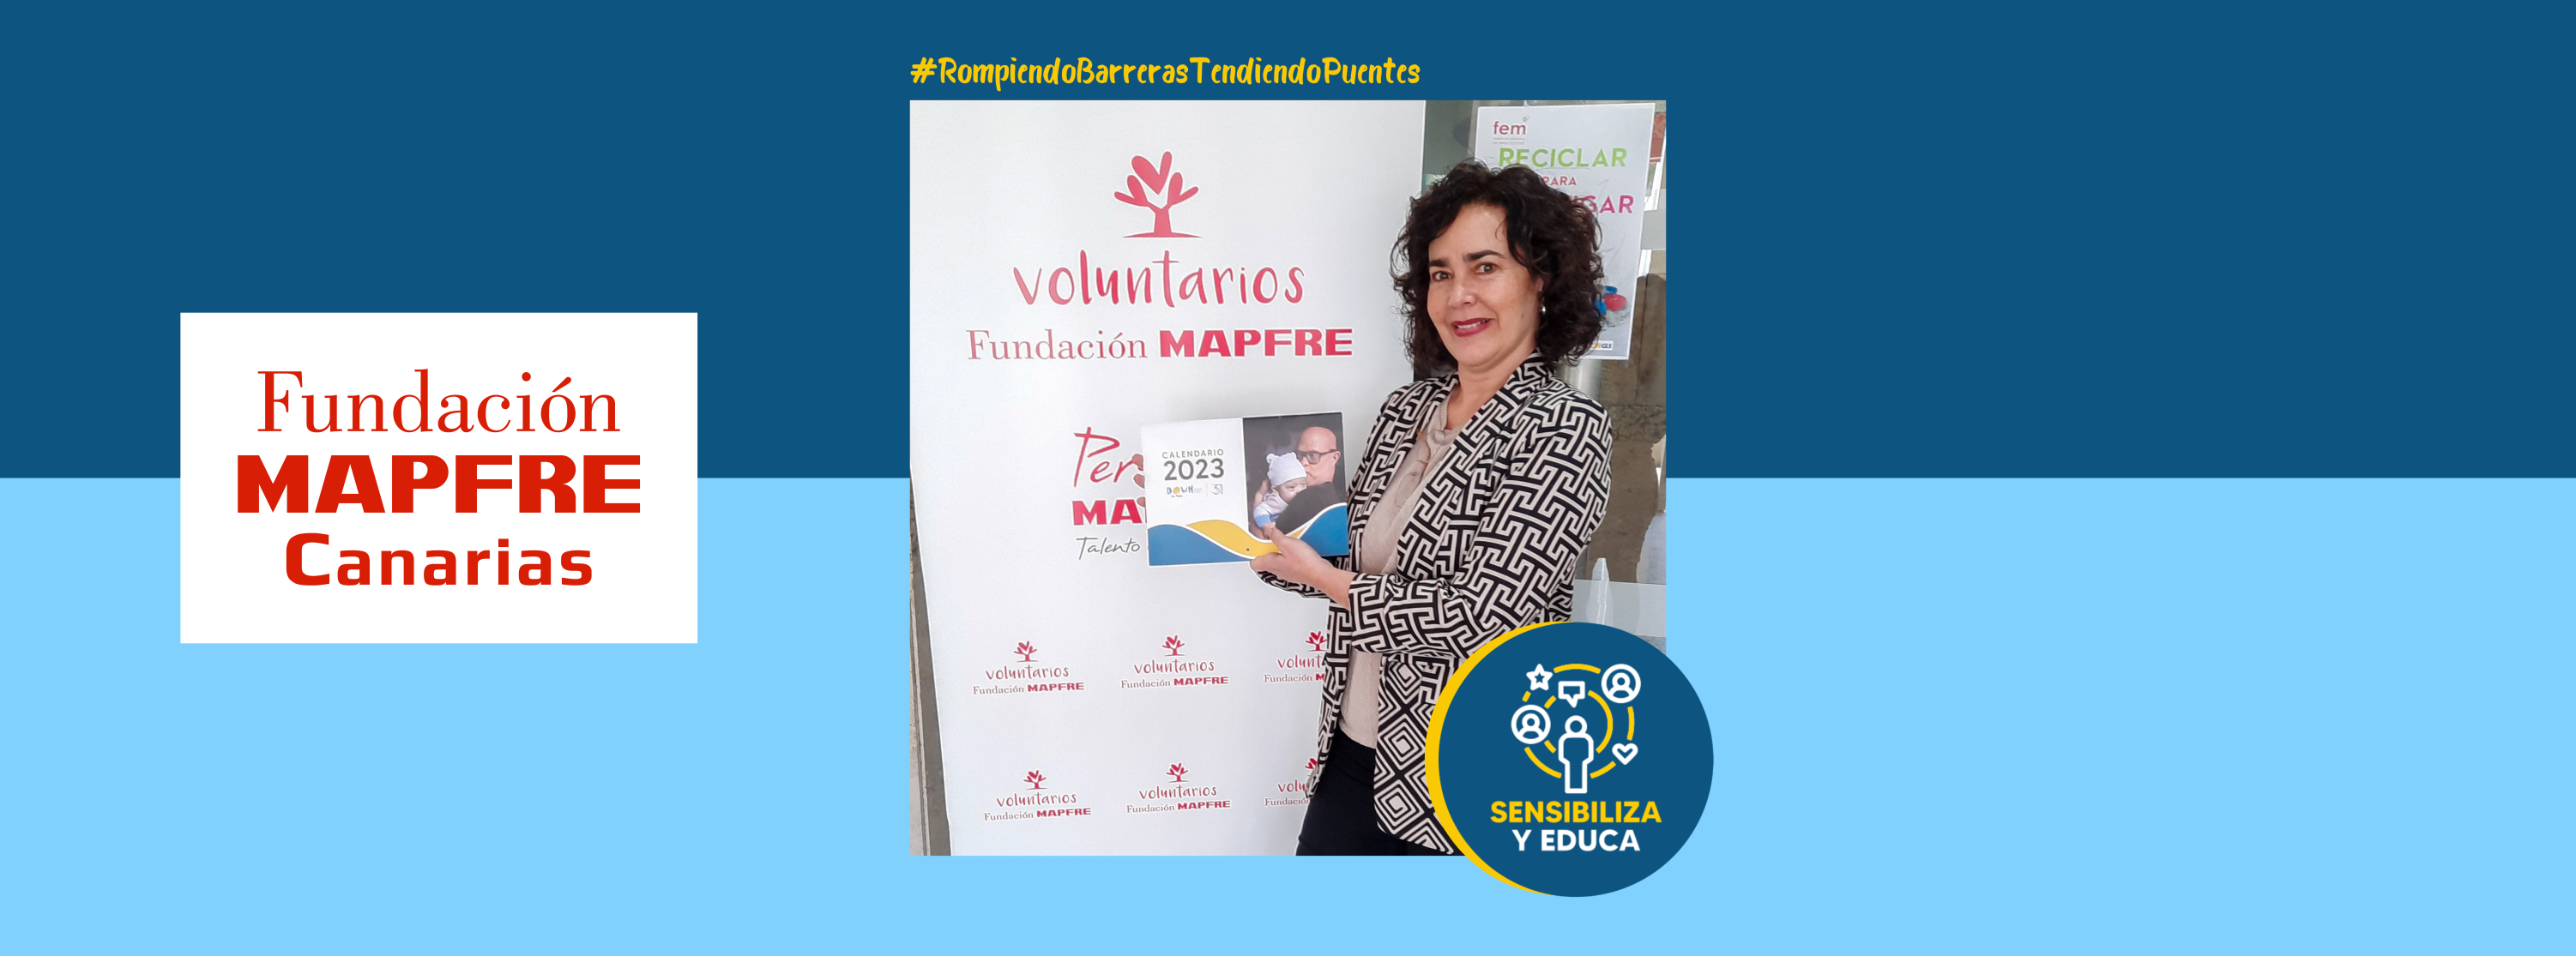 Foto de Arancha González, embajadora de la Fundación Mapfre Canarias, con uno de los Calendarios Solidarios 2023 de Down Las Palmas